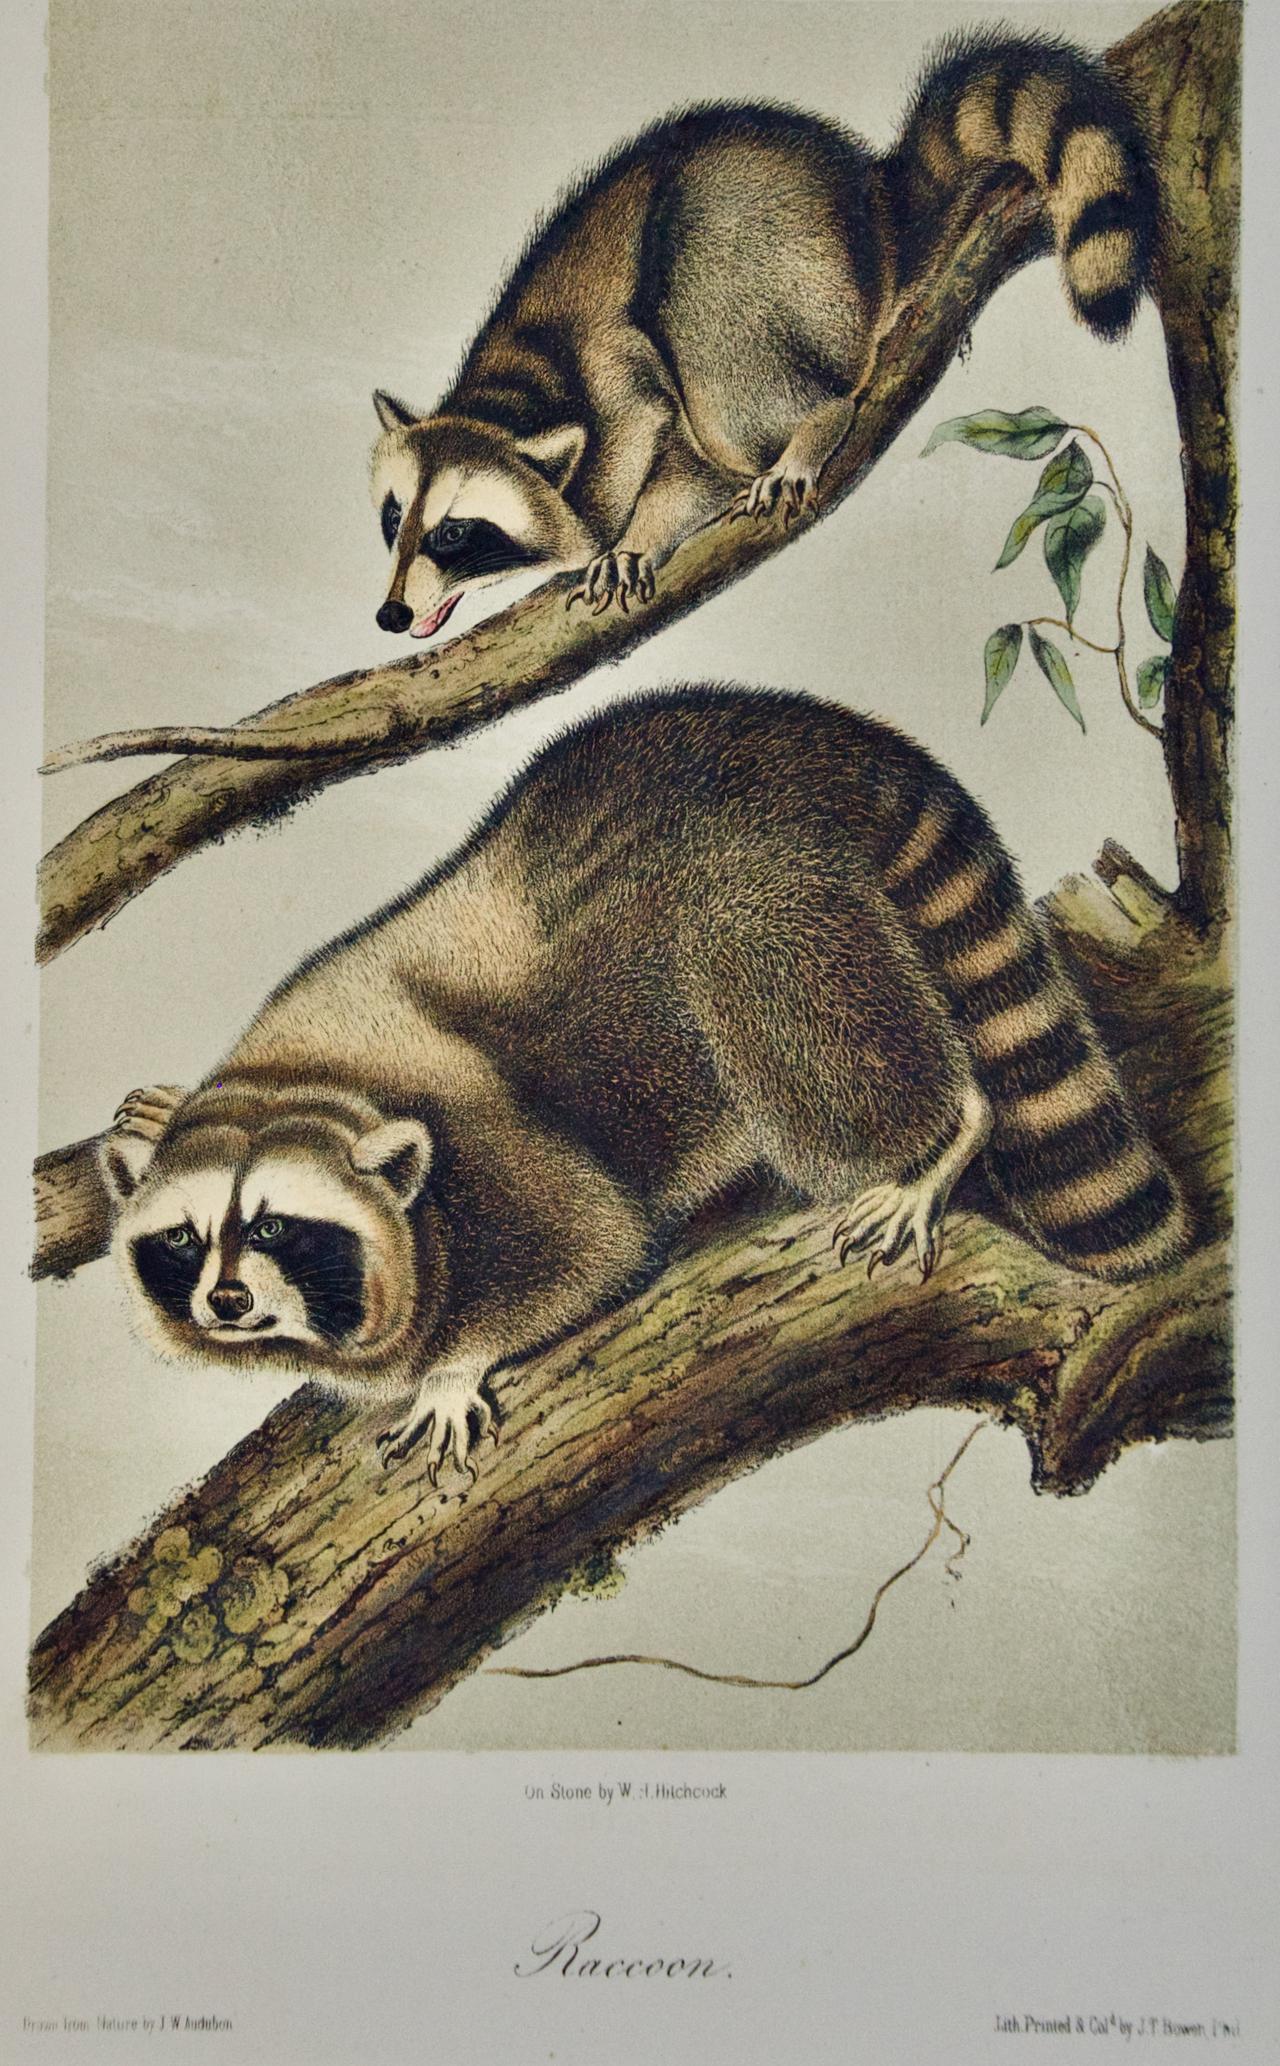 Il s'agit d'une lithographie originale en couleurs du 19ème siècle de John James Audubon intitulée 